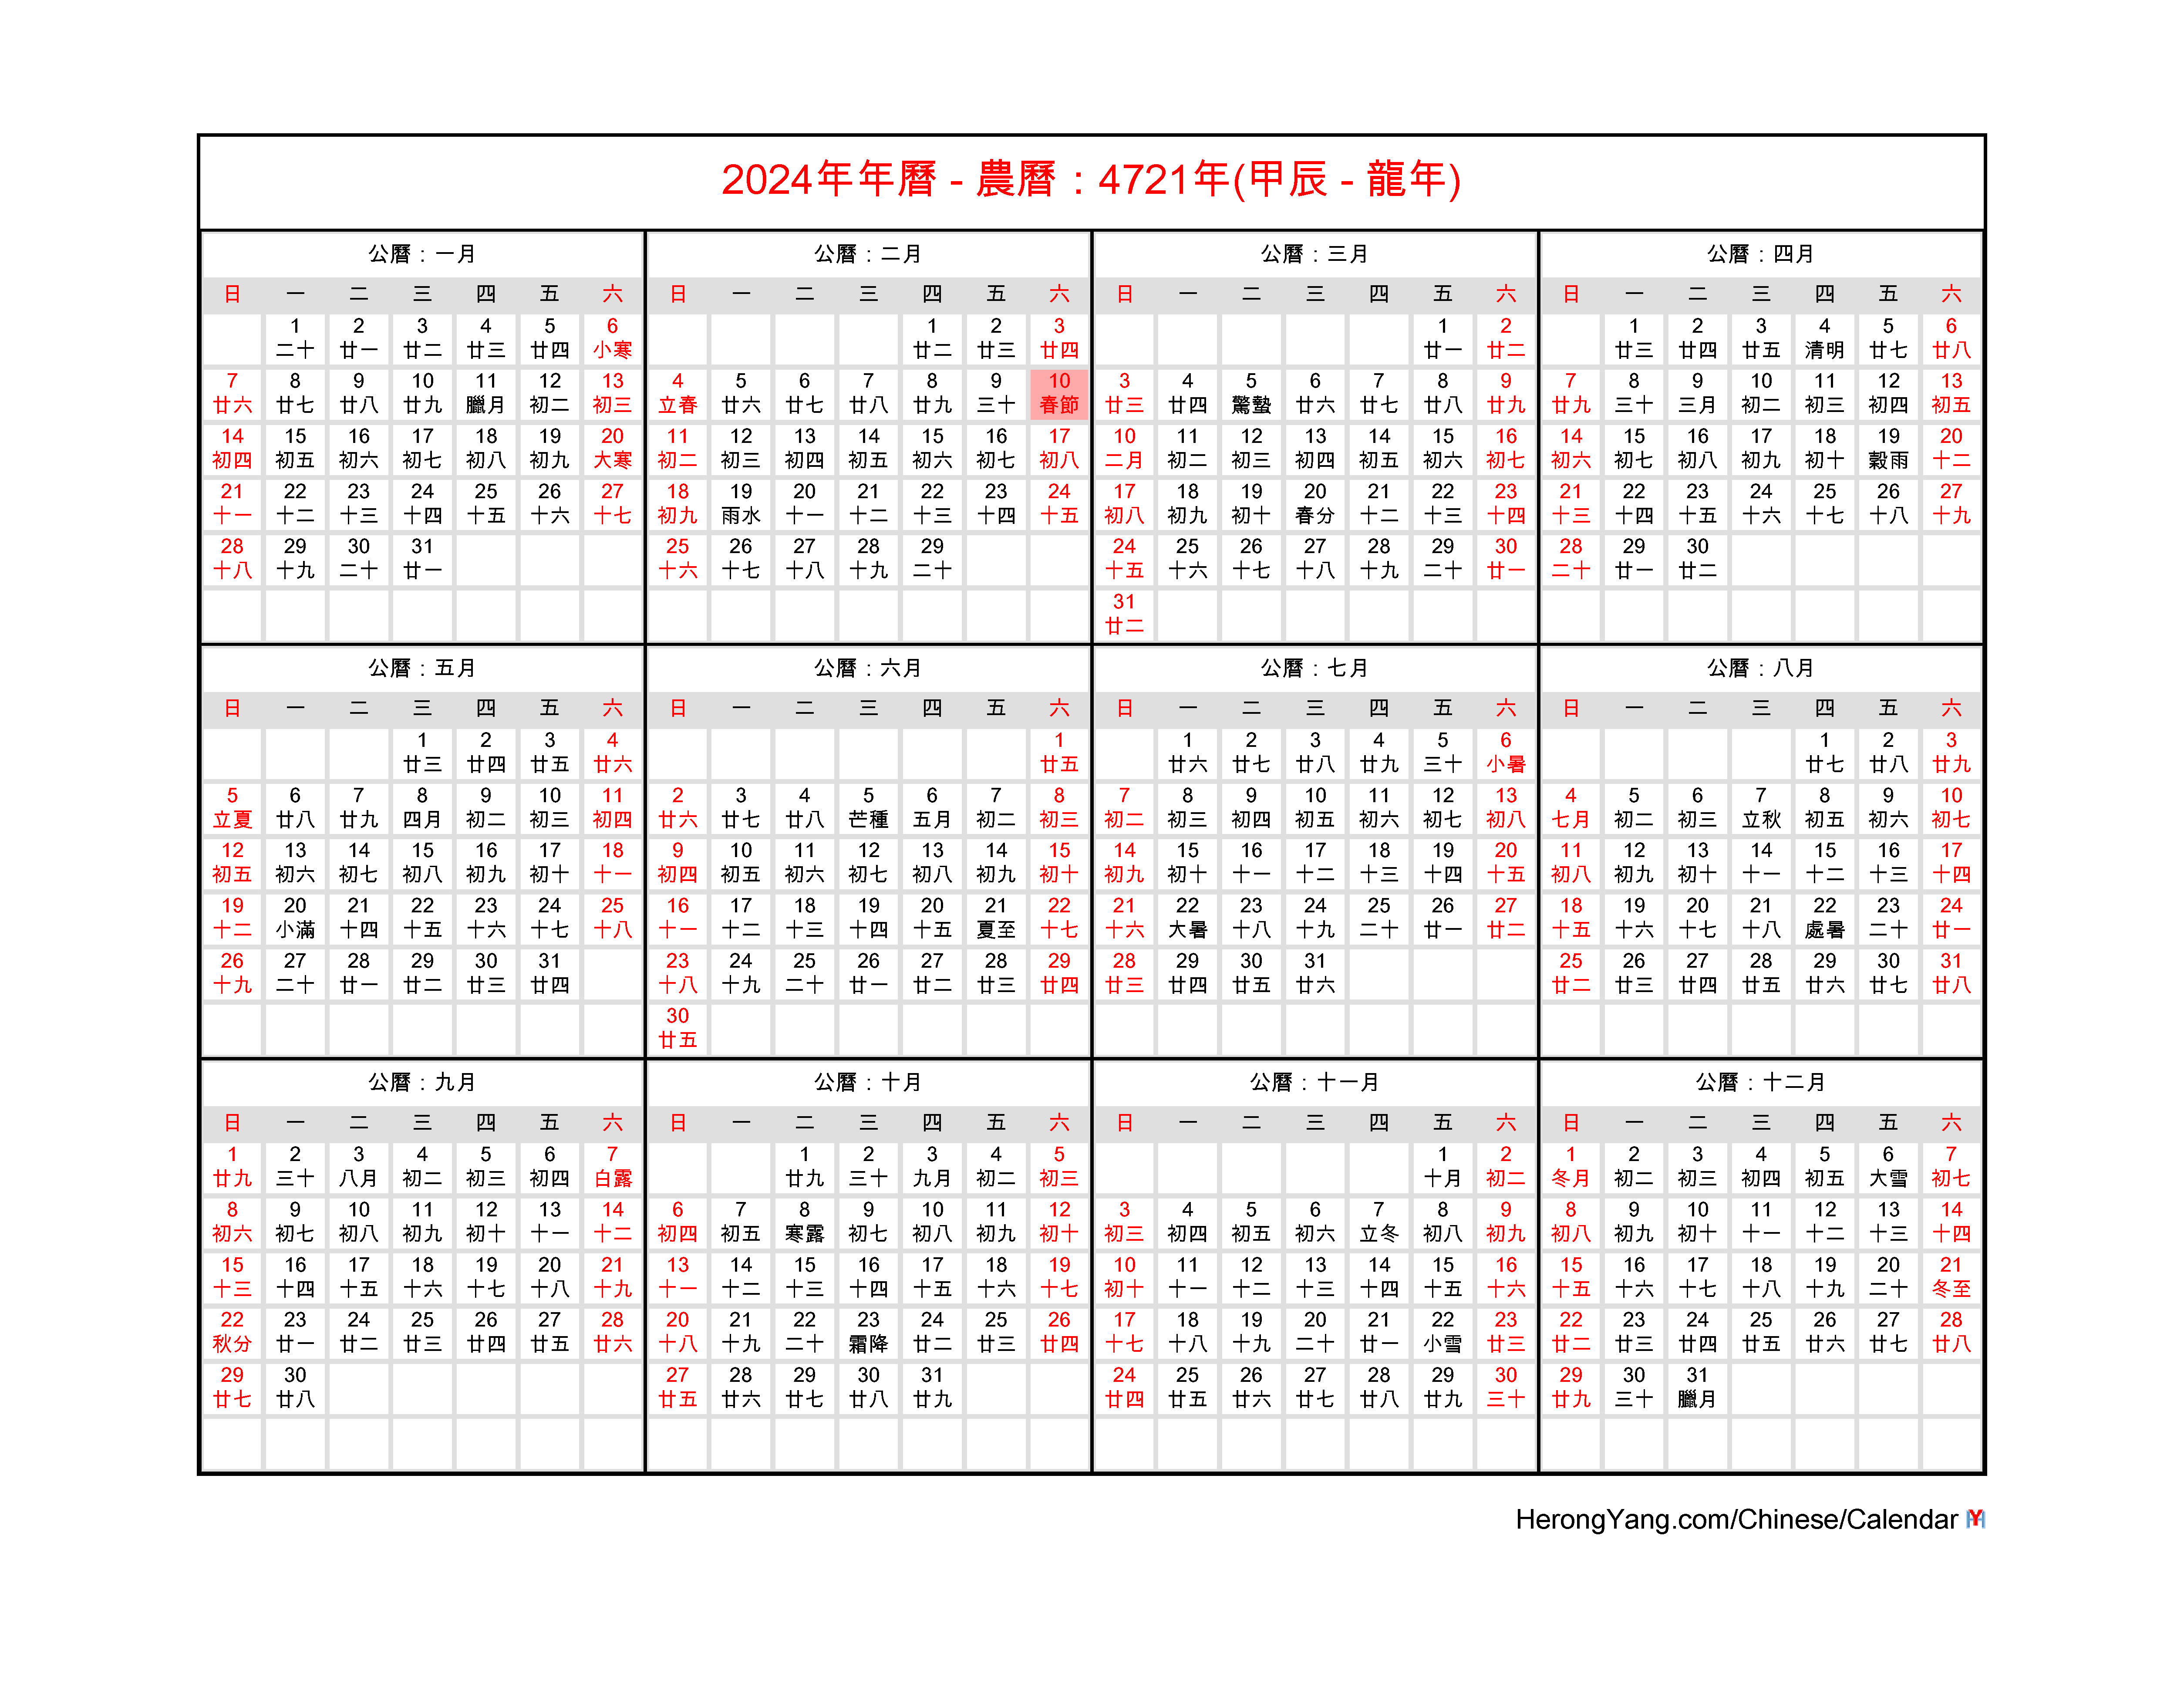 Chinese Wall Calendar 2024 October 2024 Calendar